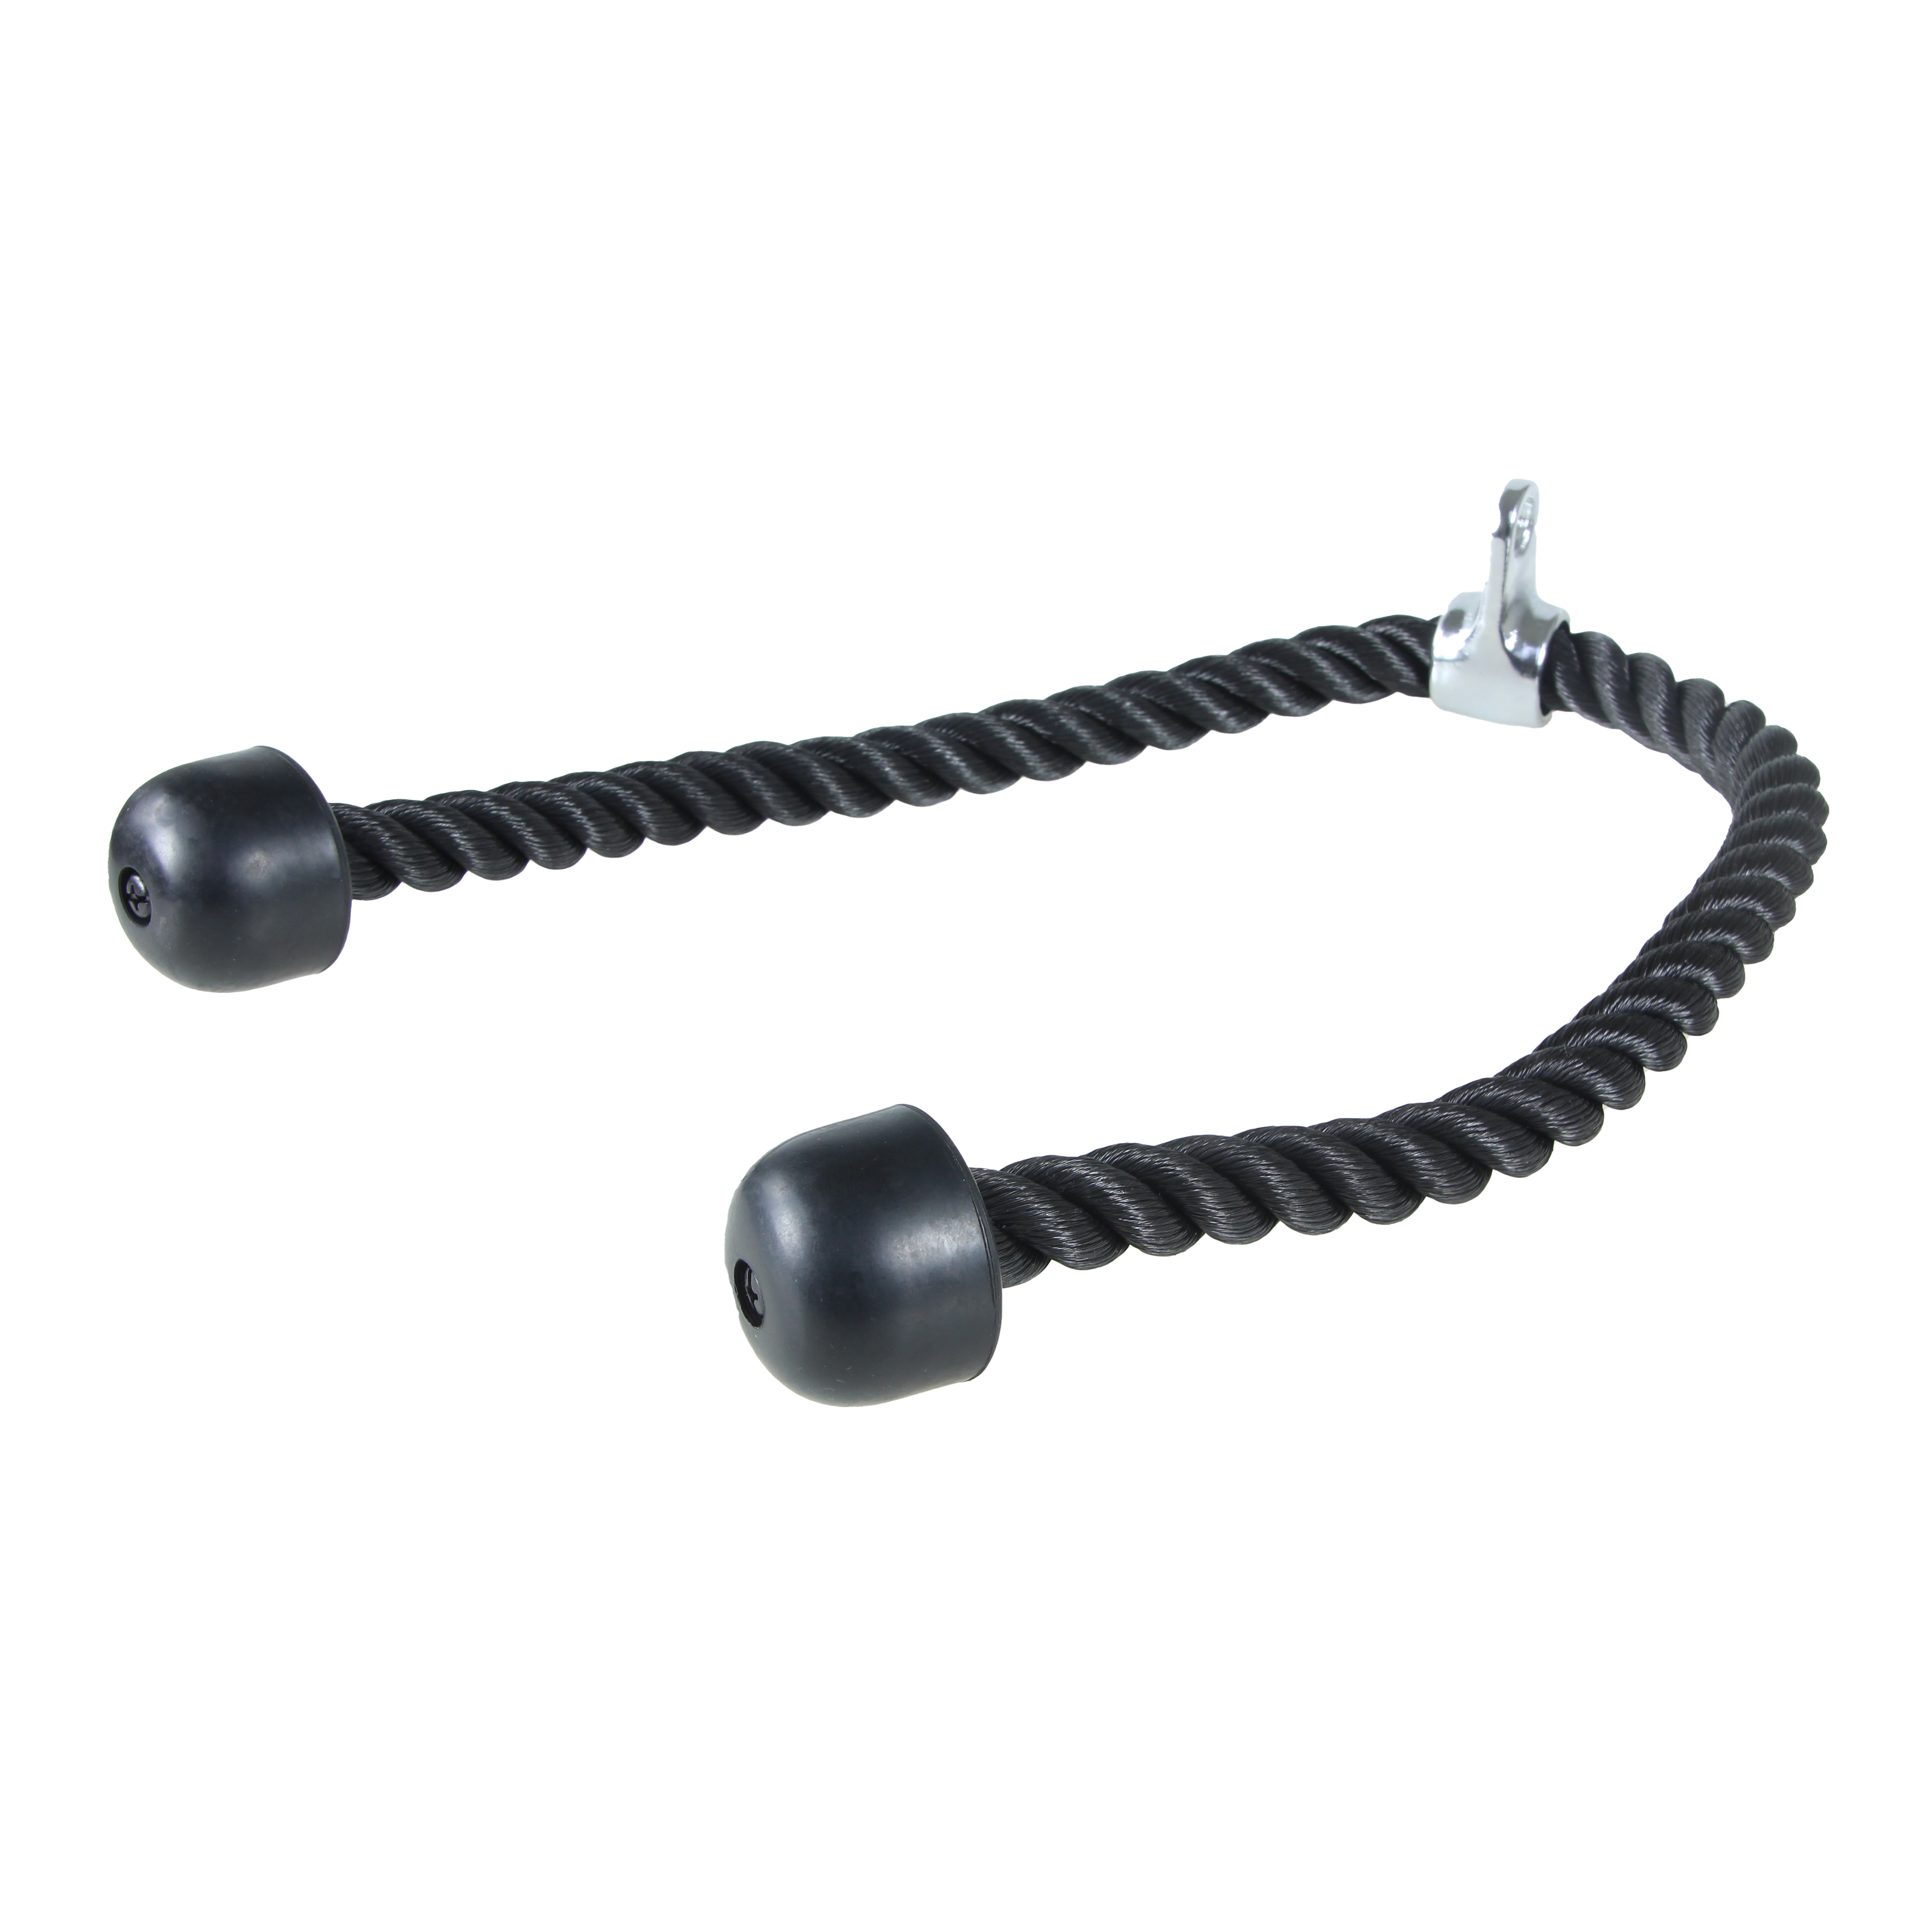 Brug Lifemaxx XL Triceps Rope (L: 100 cm) til en forbedret oplevelse